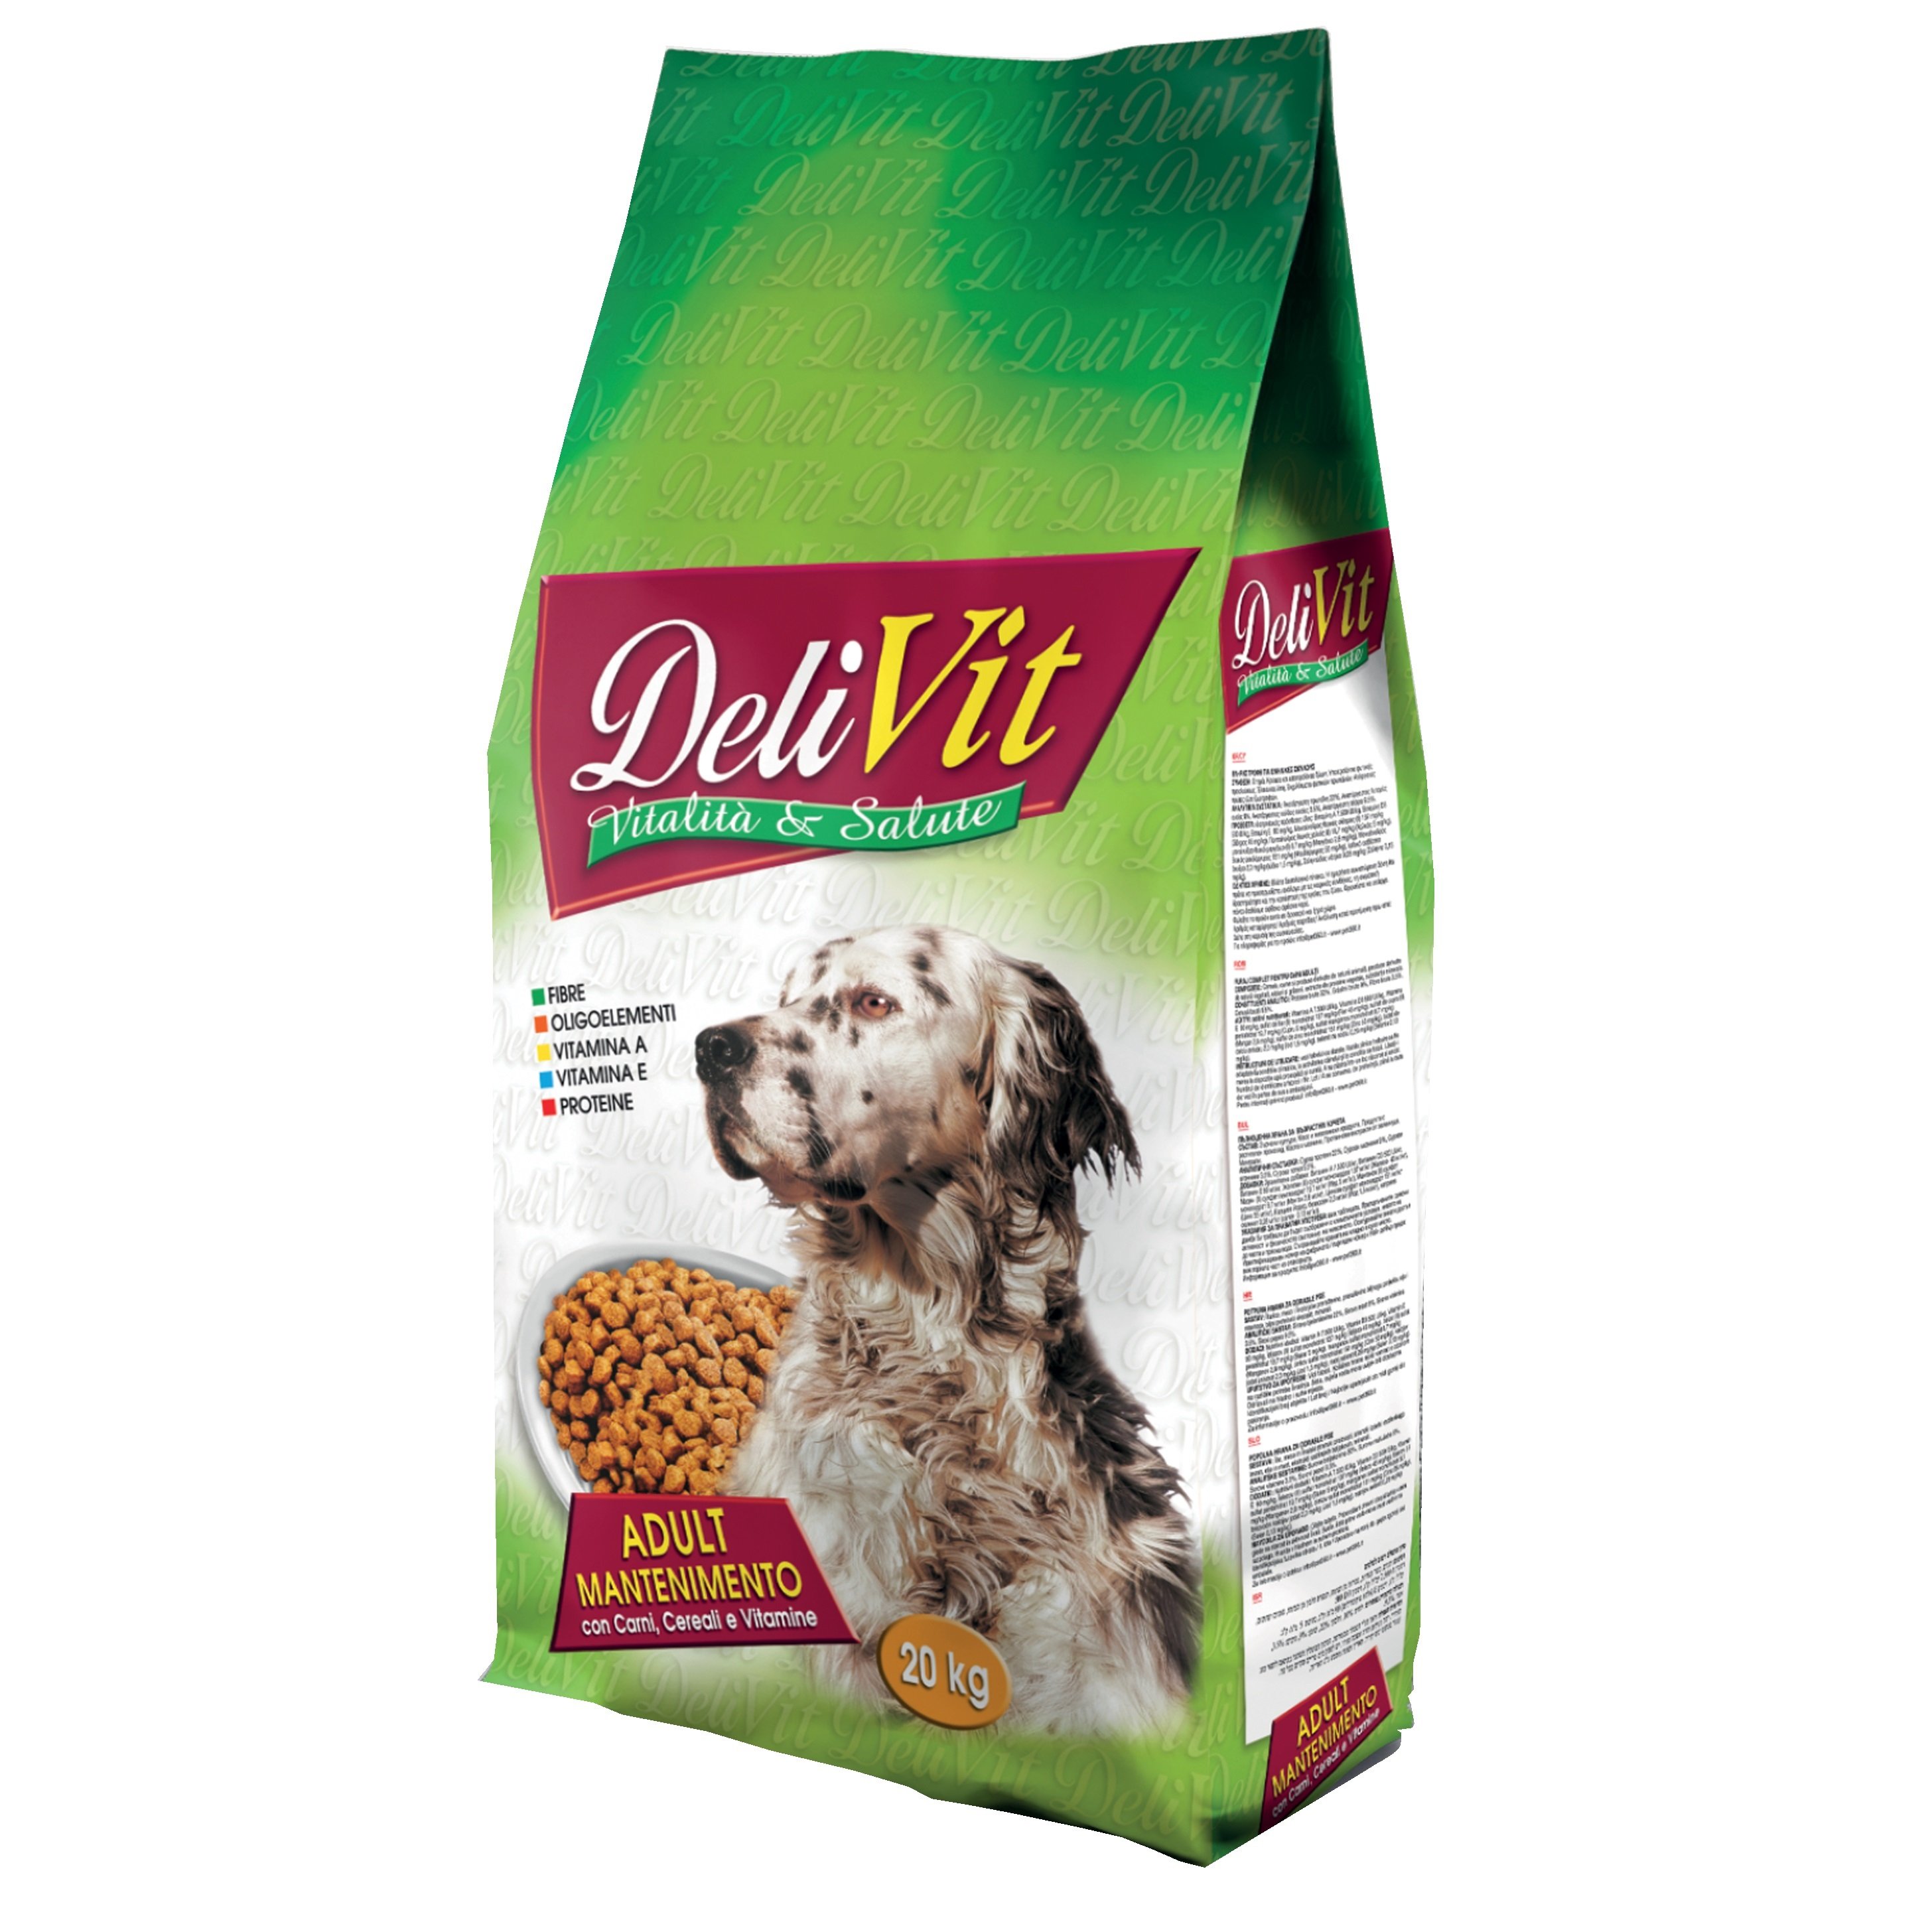 Сухой корм Delivit Maintenance для взрослых собак с мясом, злаками и витаминами, 20 кг - фото 1